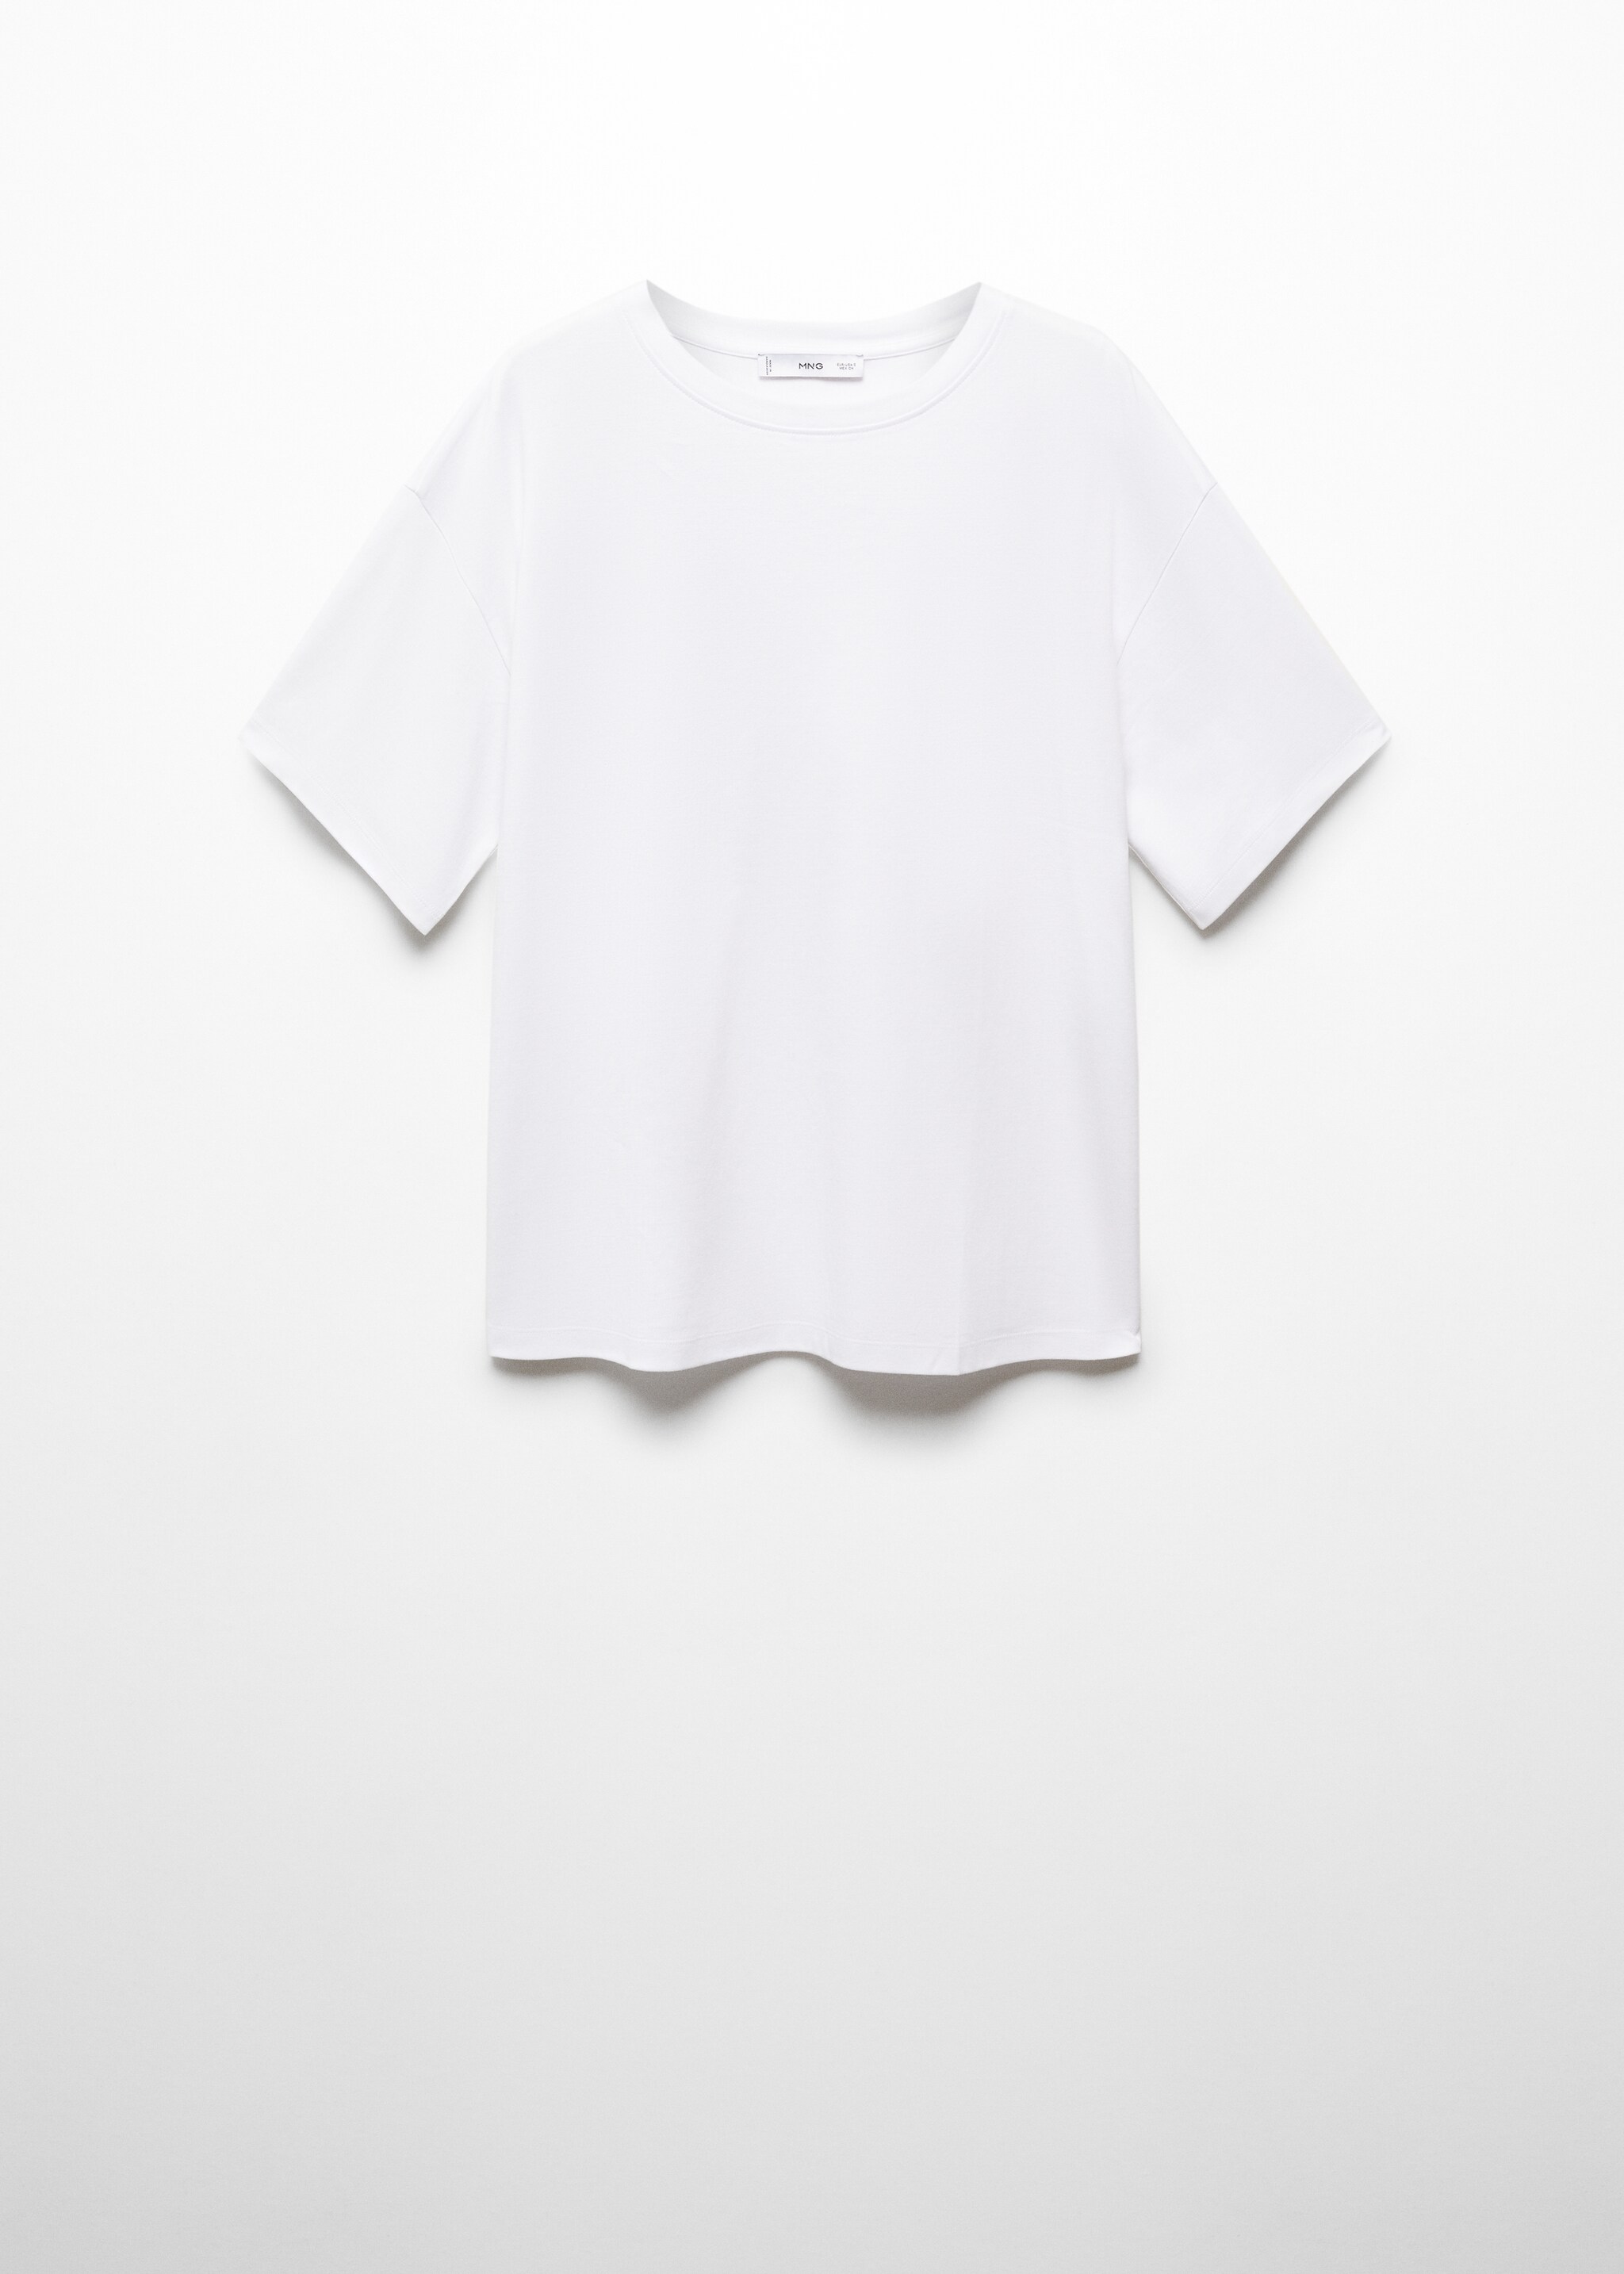 Maglietta oversize 100% cotone - Articolo senza modello